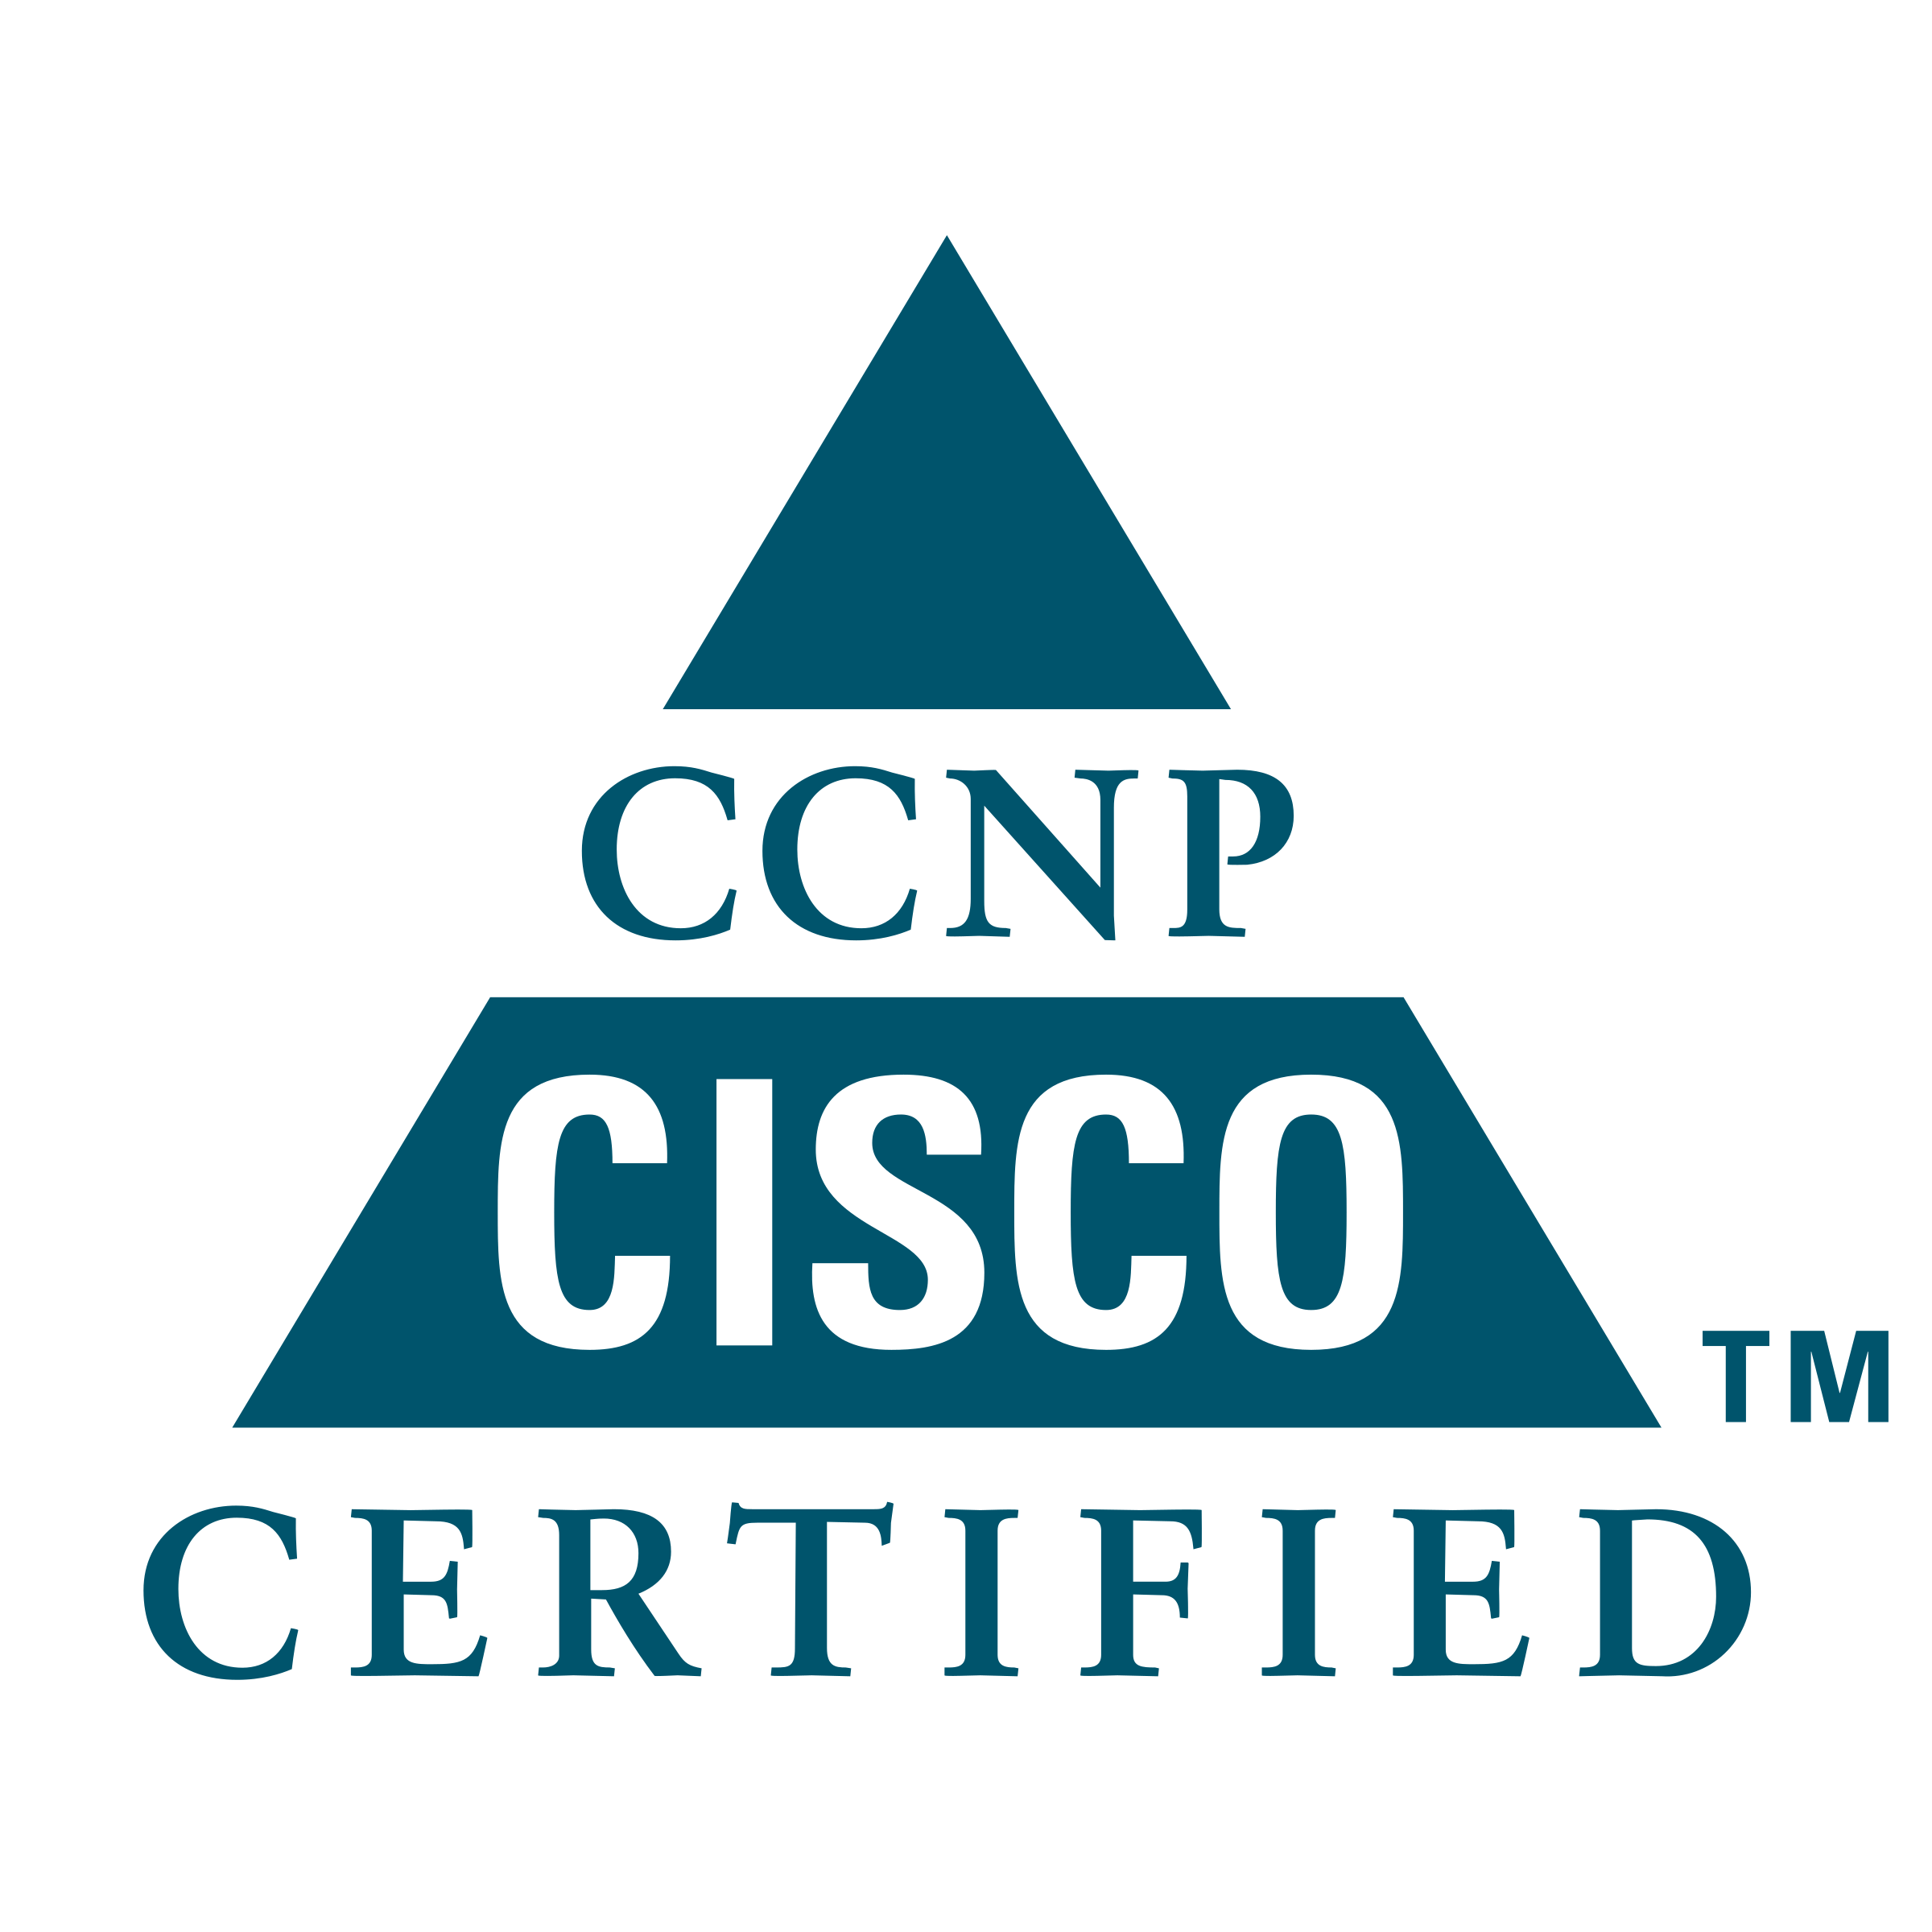 CCNP Logo - CCNP Logo PNG Transparent & SVG Vector - Freebie Supply